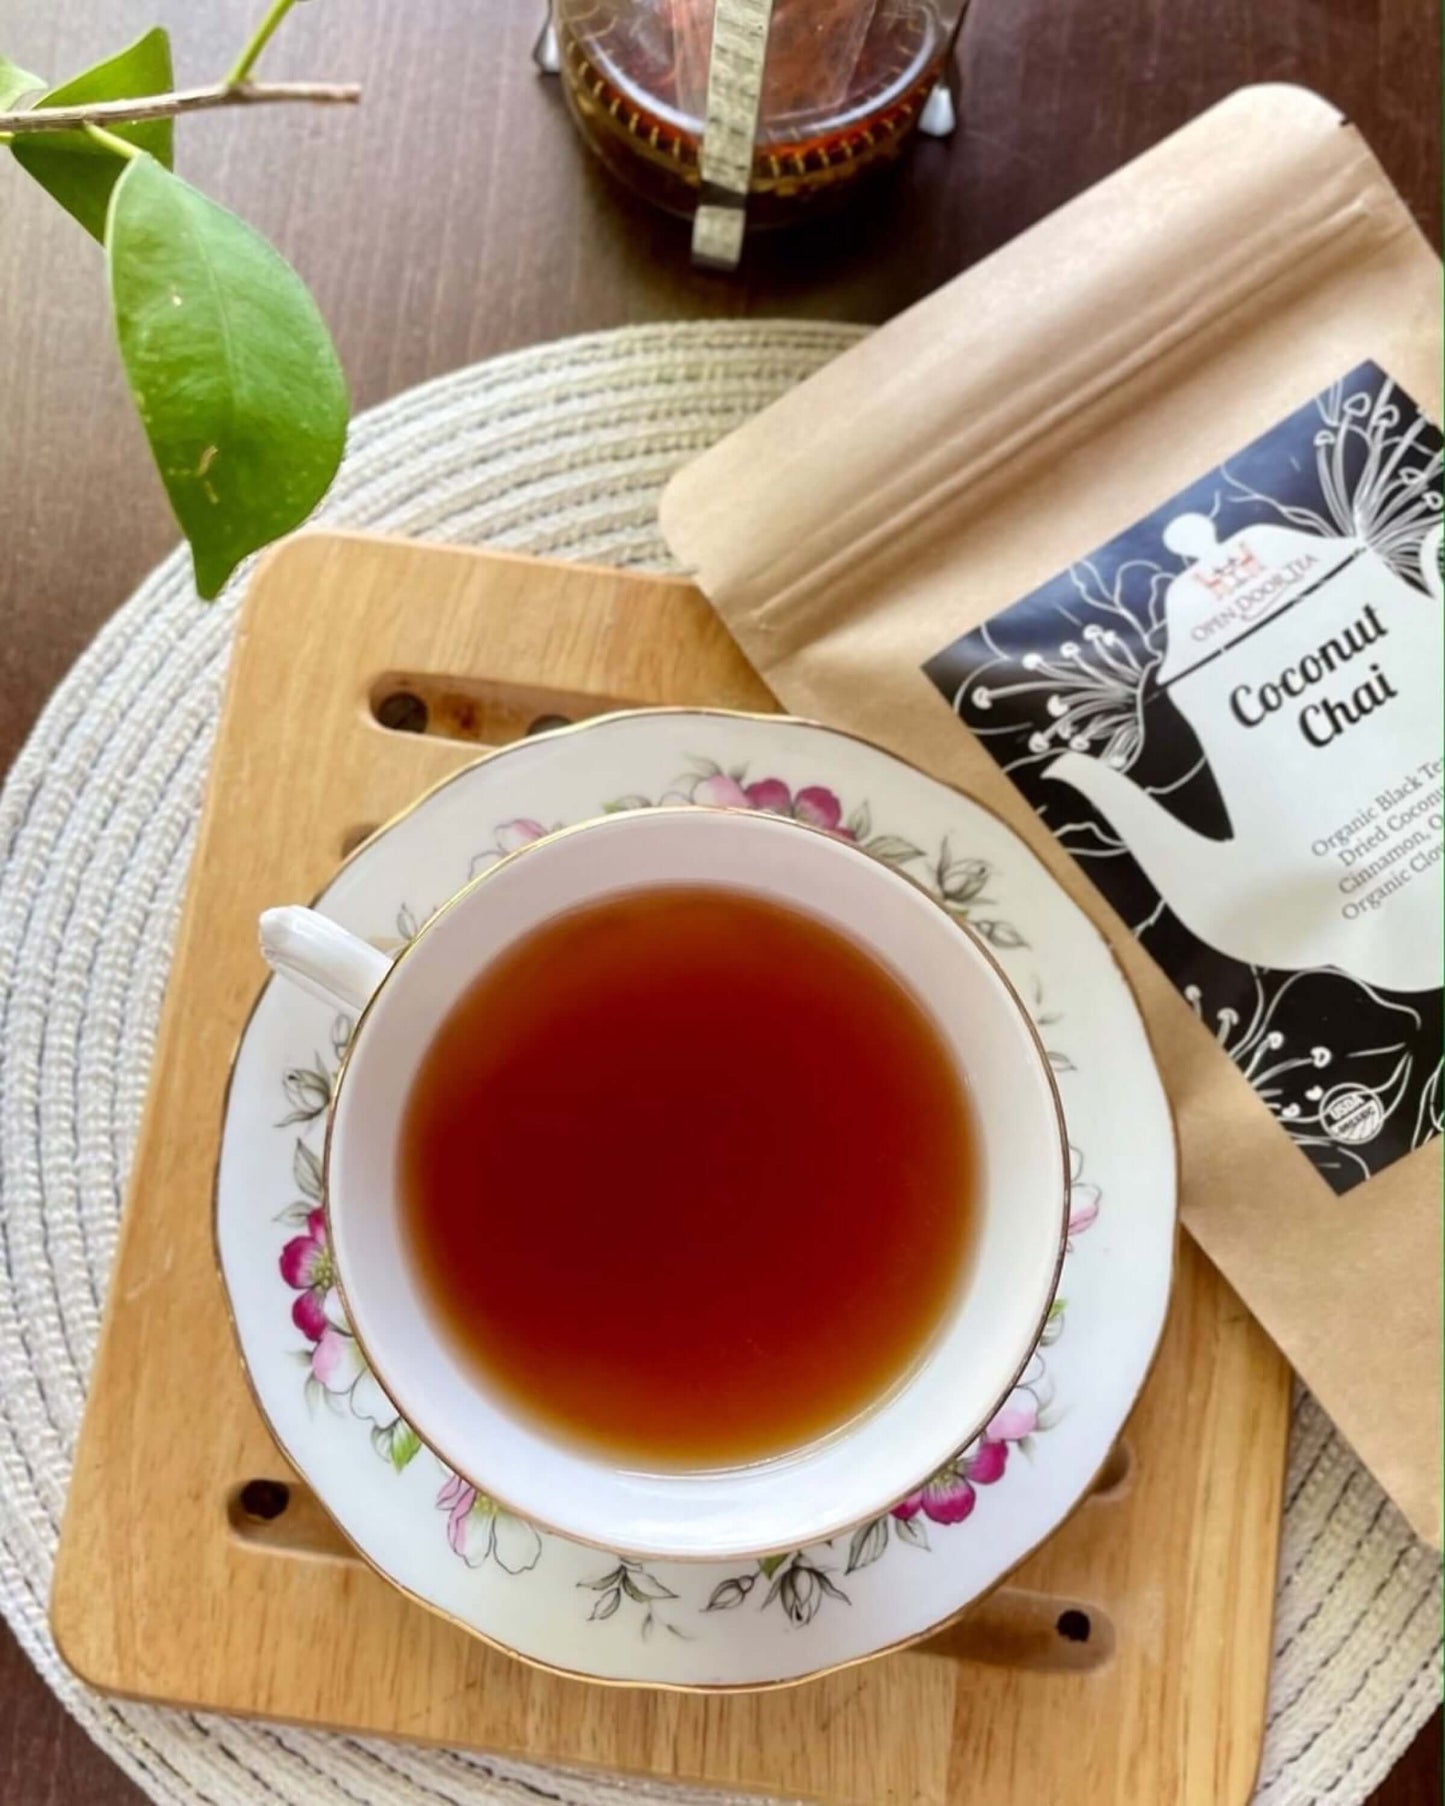 Coconut Chai by Open Door Tea